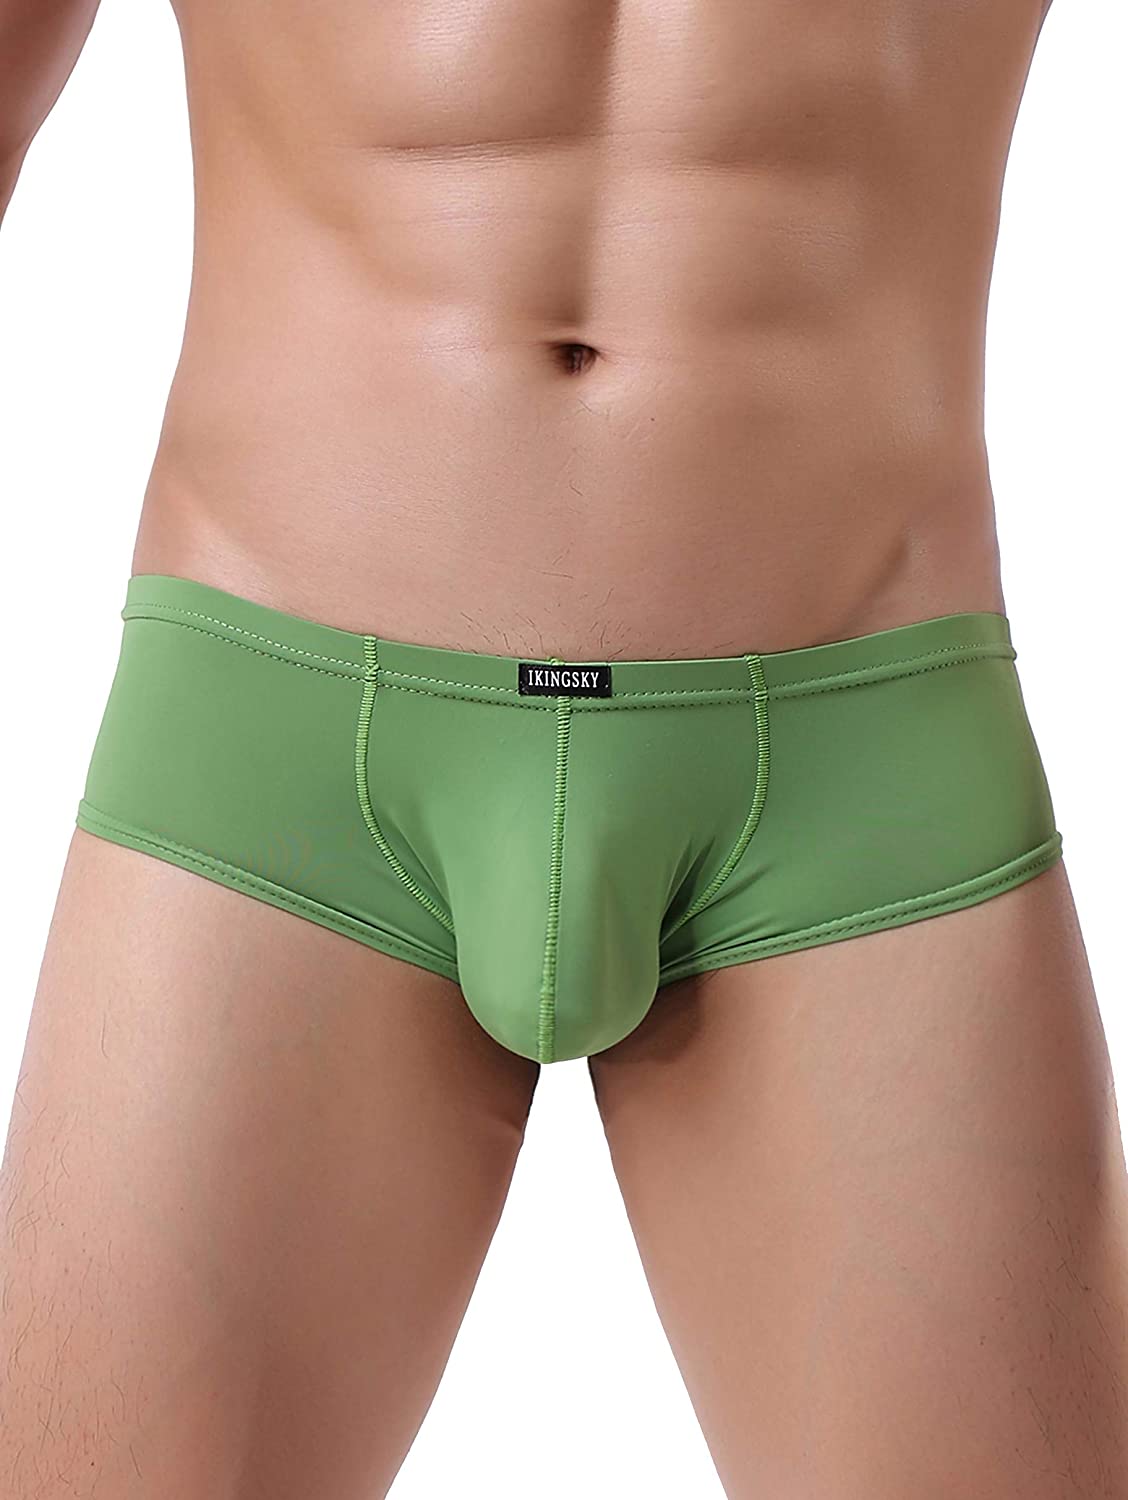 Ikingsky Mens Soft Boxer Briefs U Hance Pouch Mens Underwear Ebay